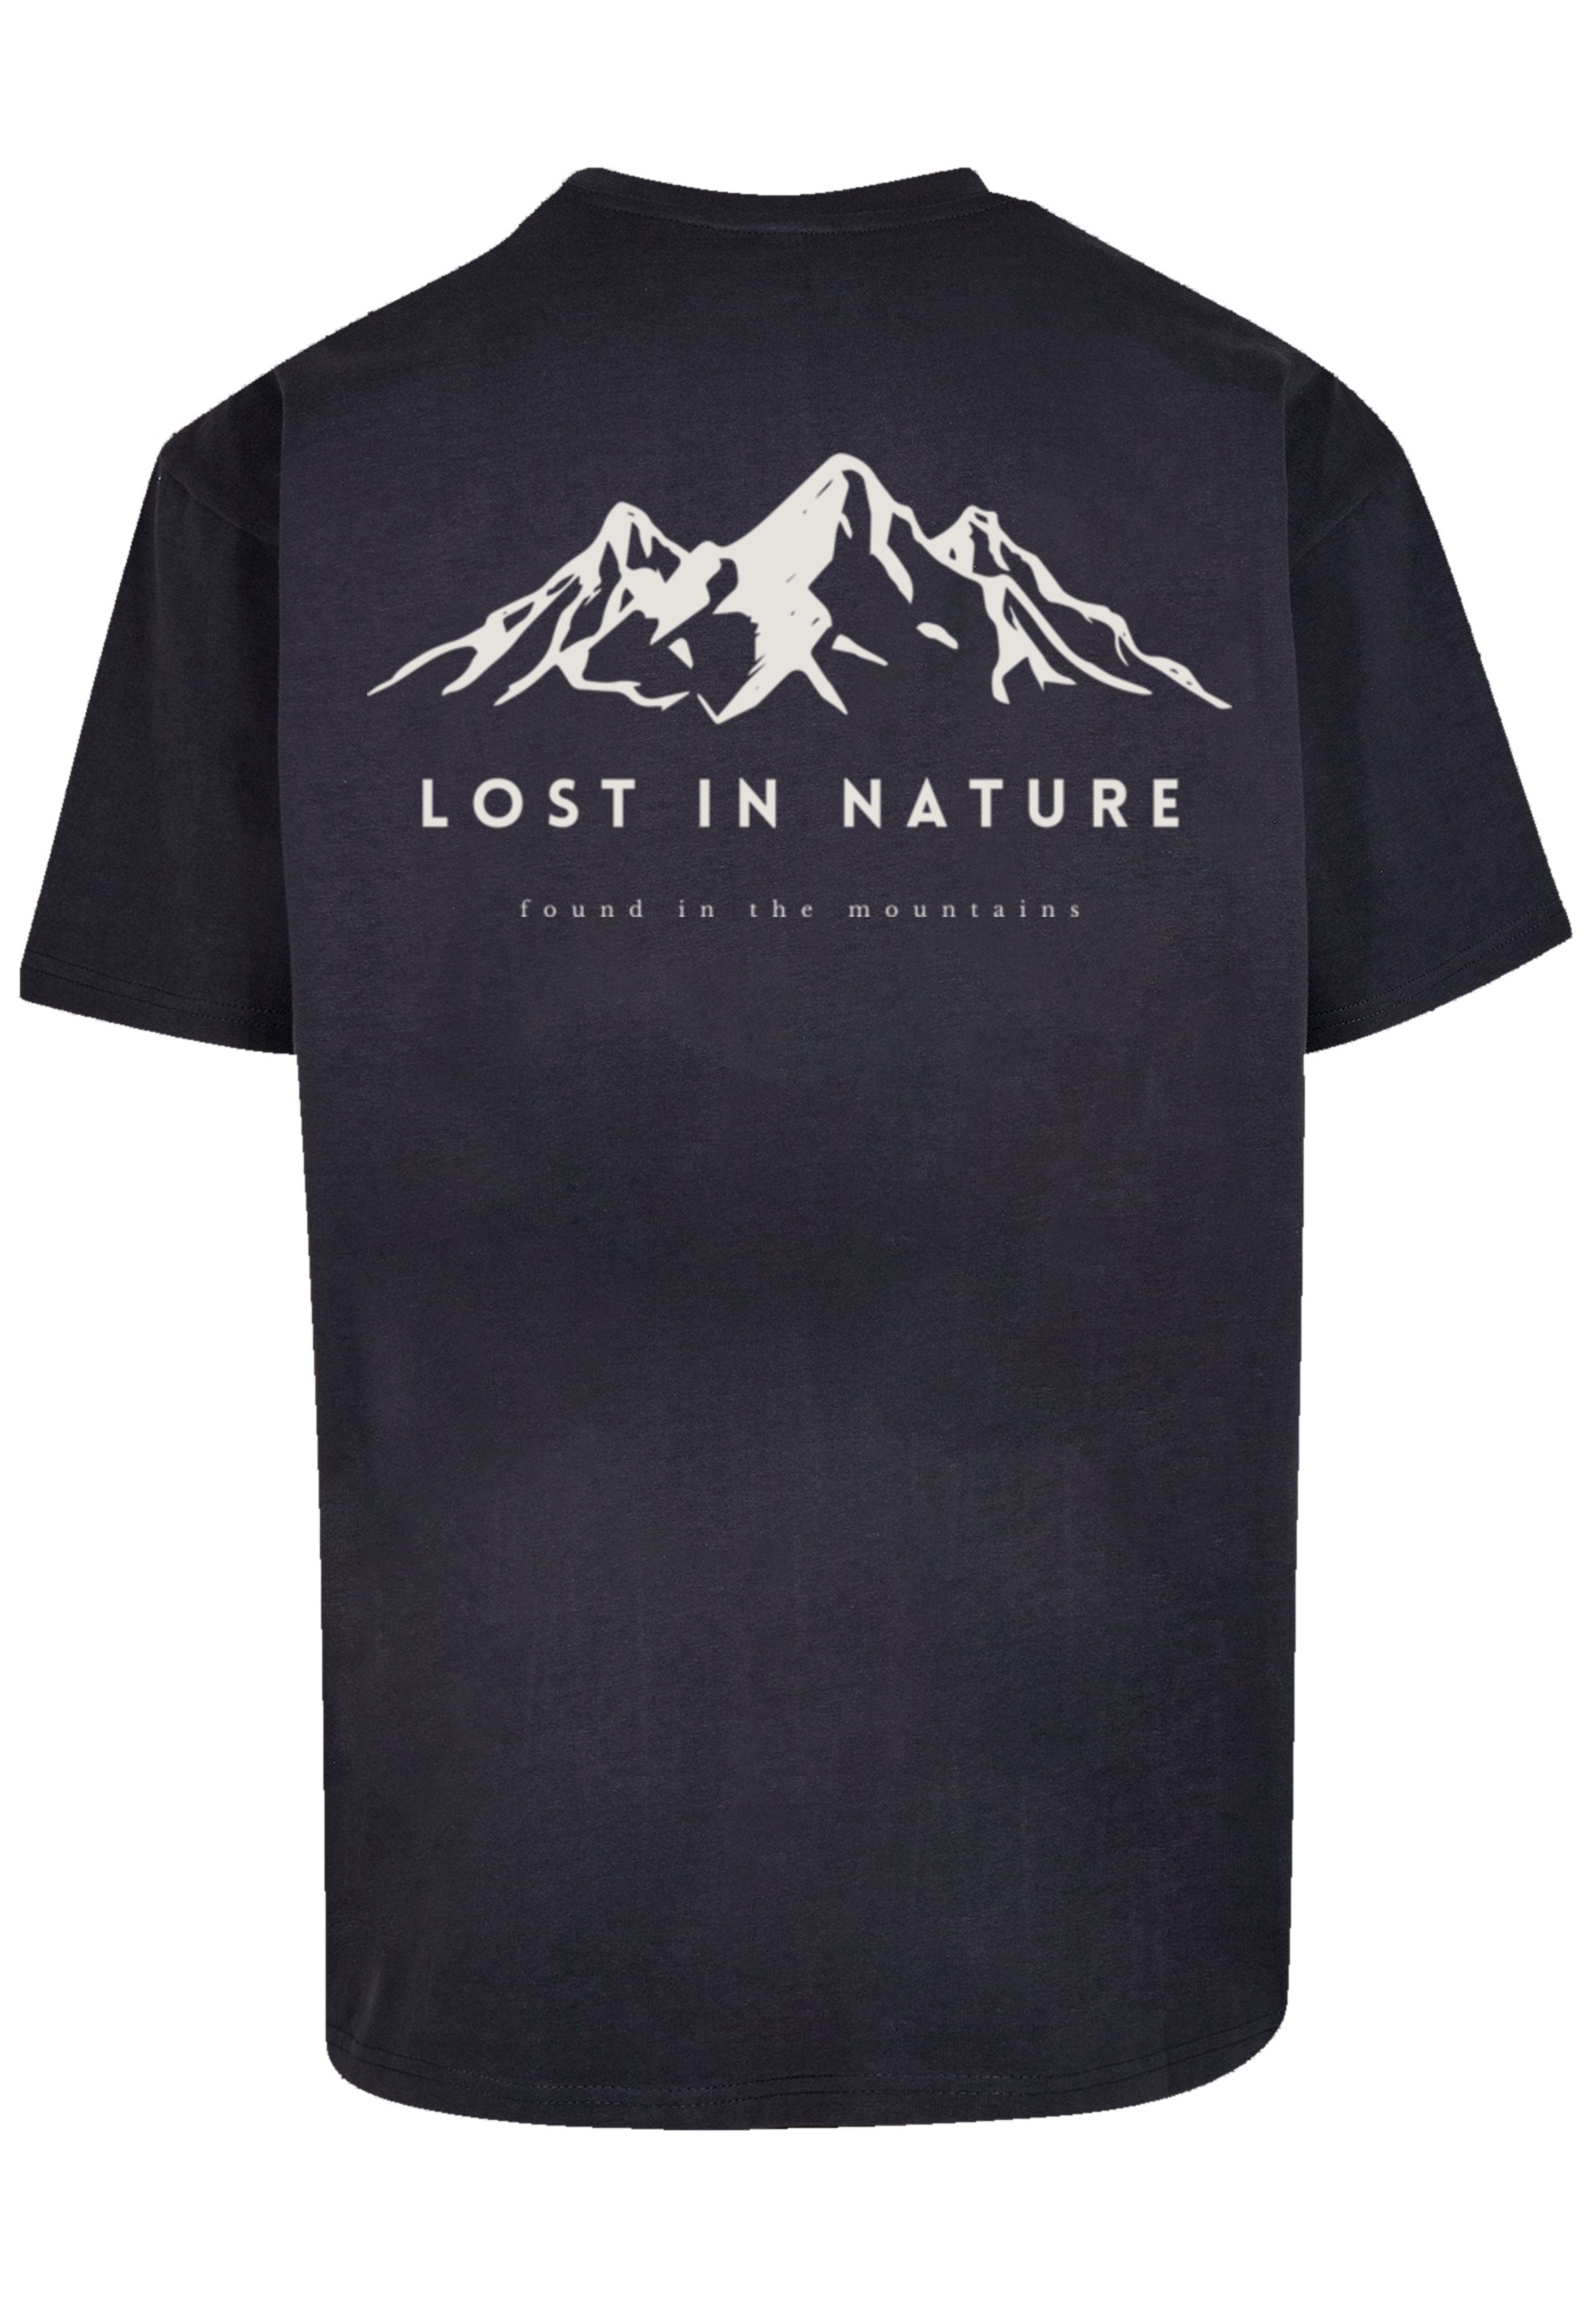 F4NT4STIC T-Shirt "Lost in nature", Print günstig online kaufen